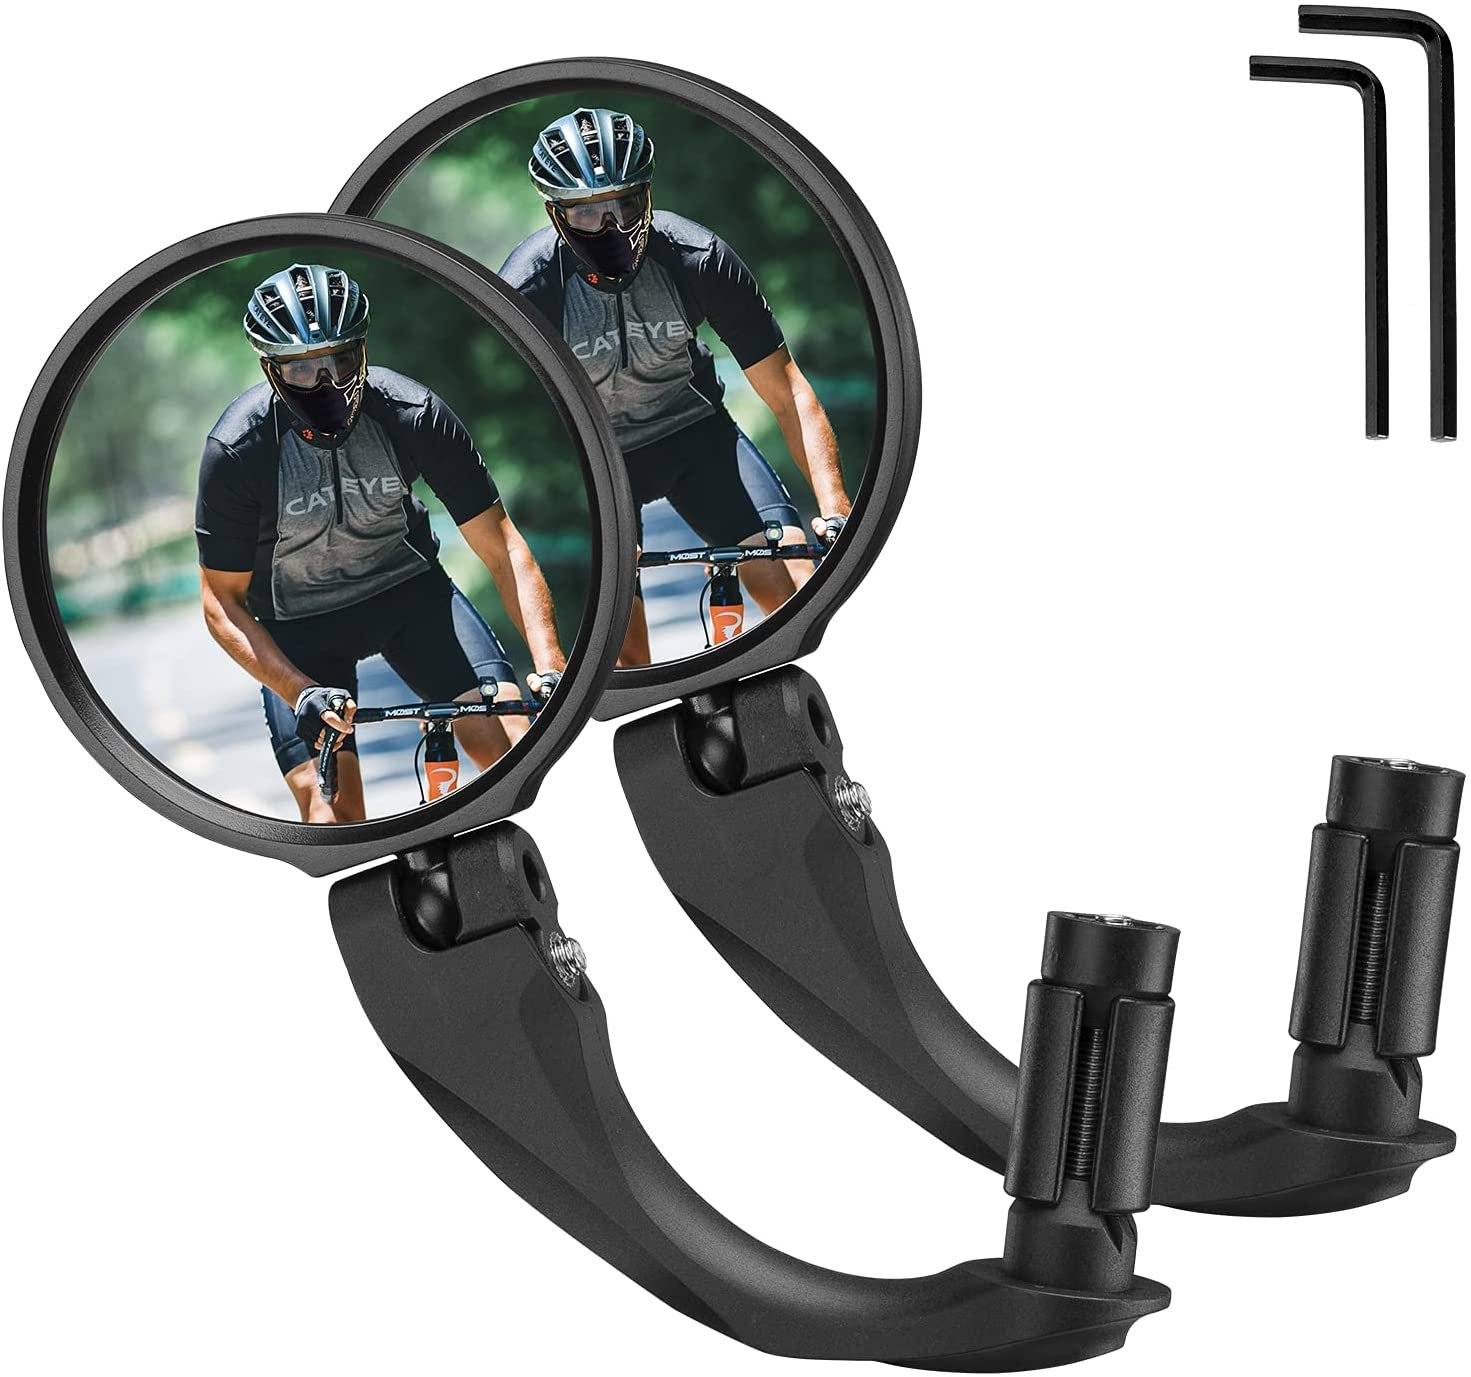 Зеркало велосипедное RockBros, акриловое, заднего вида, круглое 7,5 см, длина ручки 9 см, черный, FK-272 зеркало заднего вида m wave 3d micro spion с креплением на руль 270029